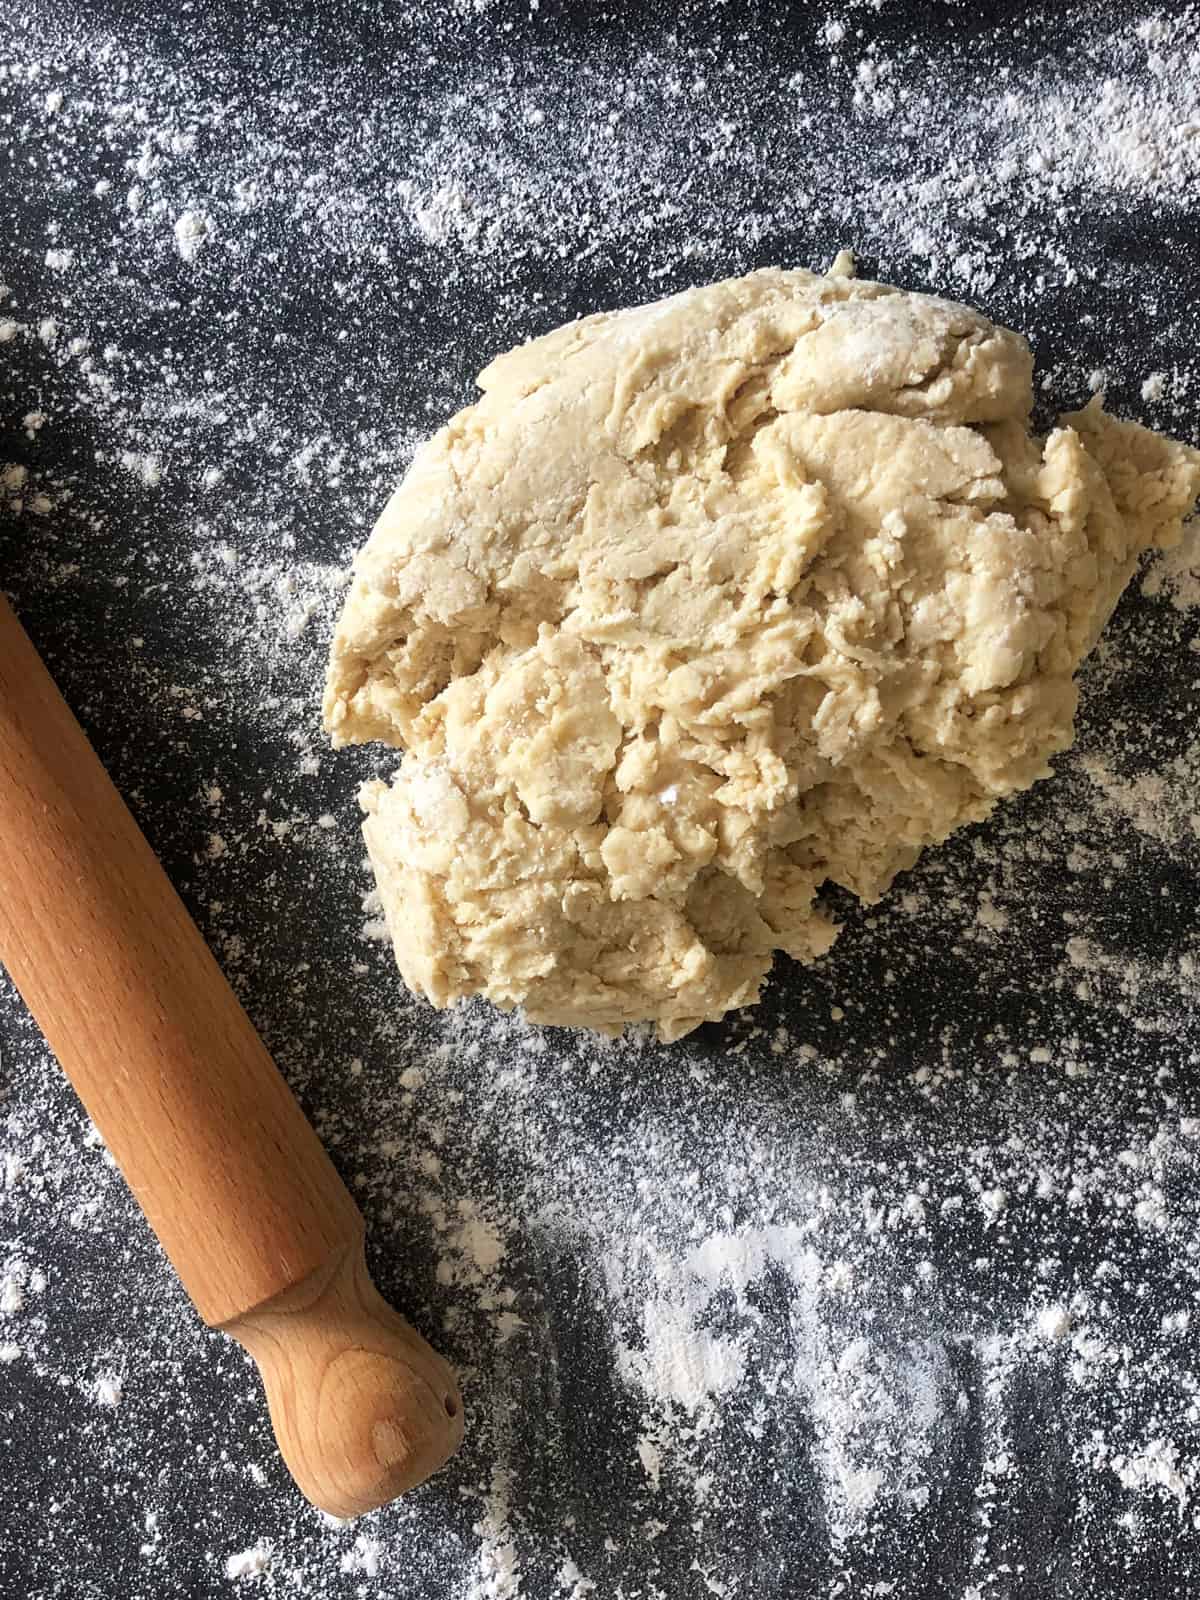 Scone dough - scone recipe step-by-step